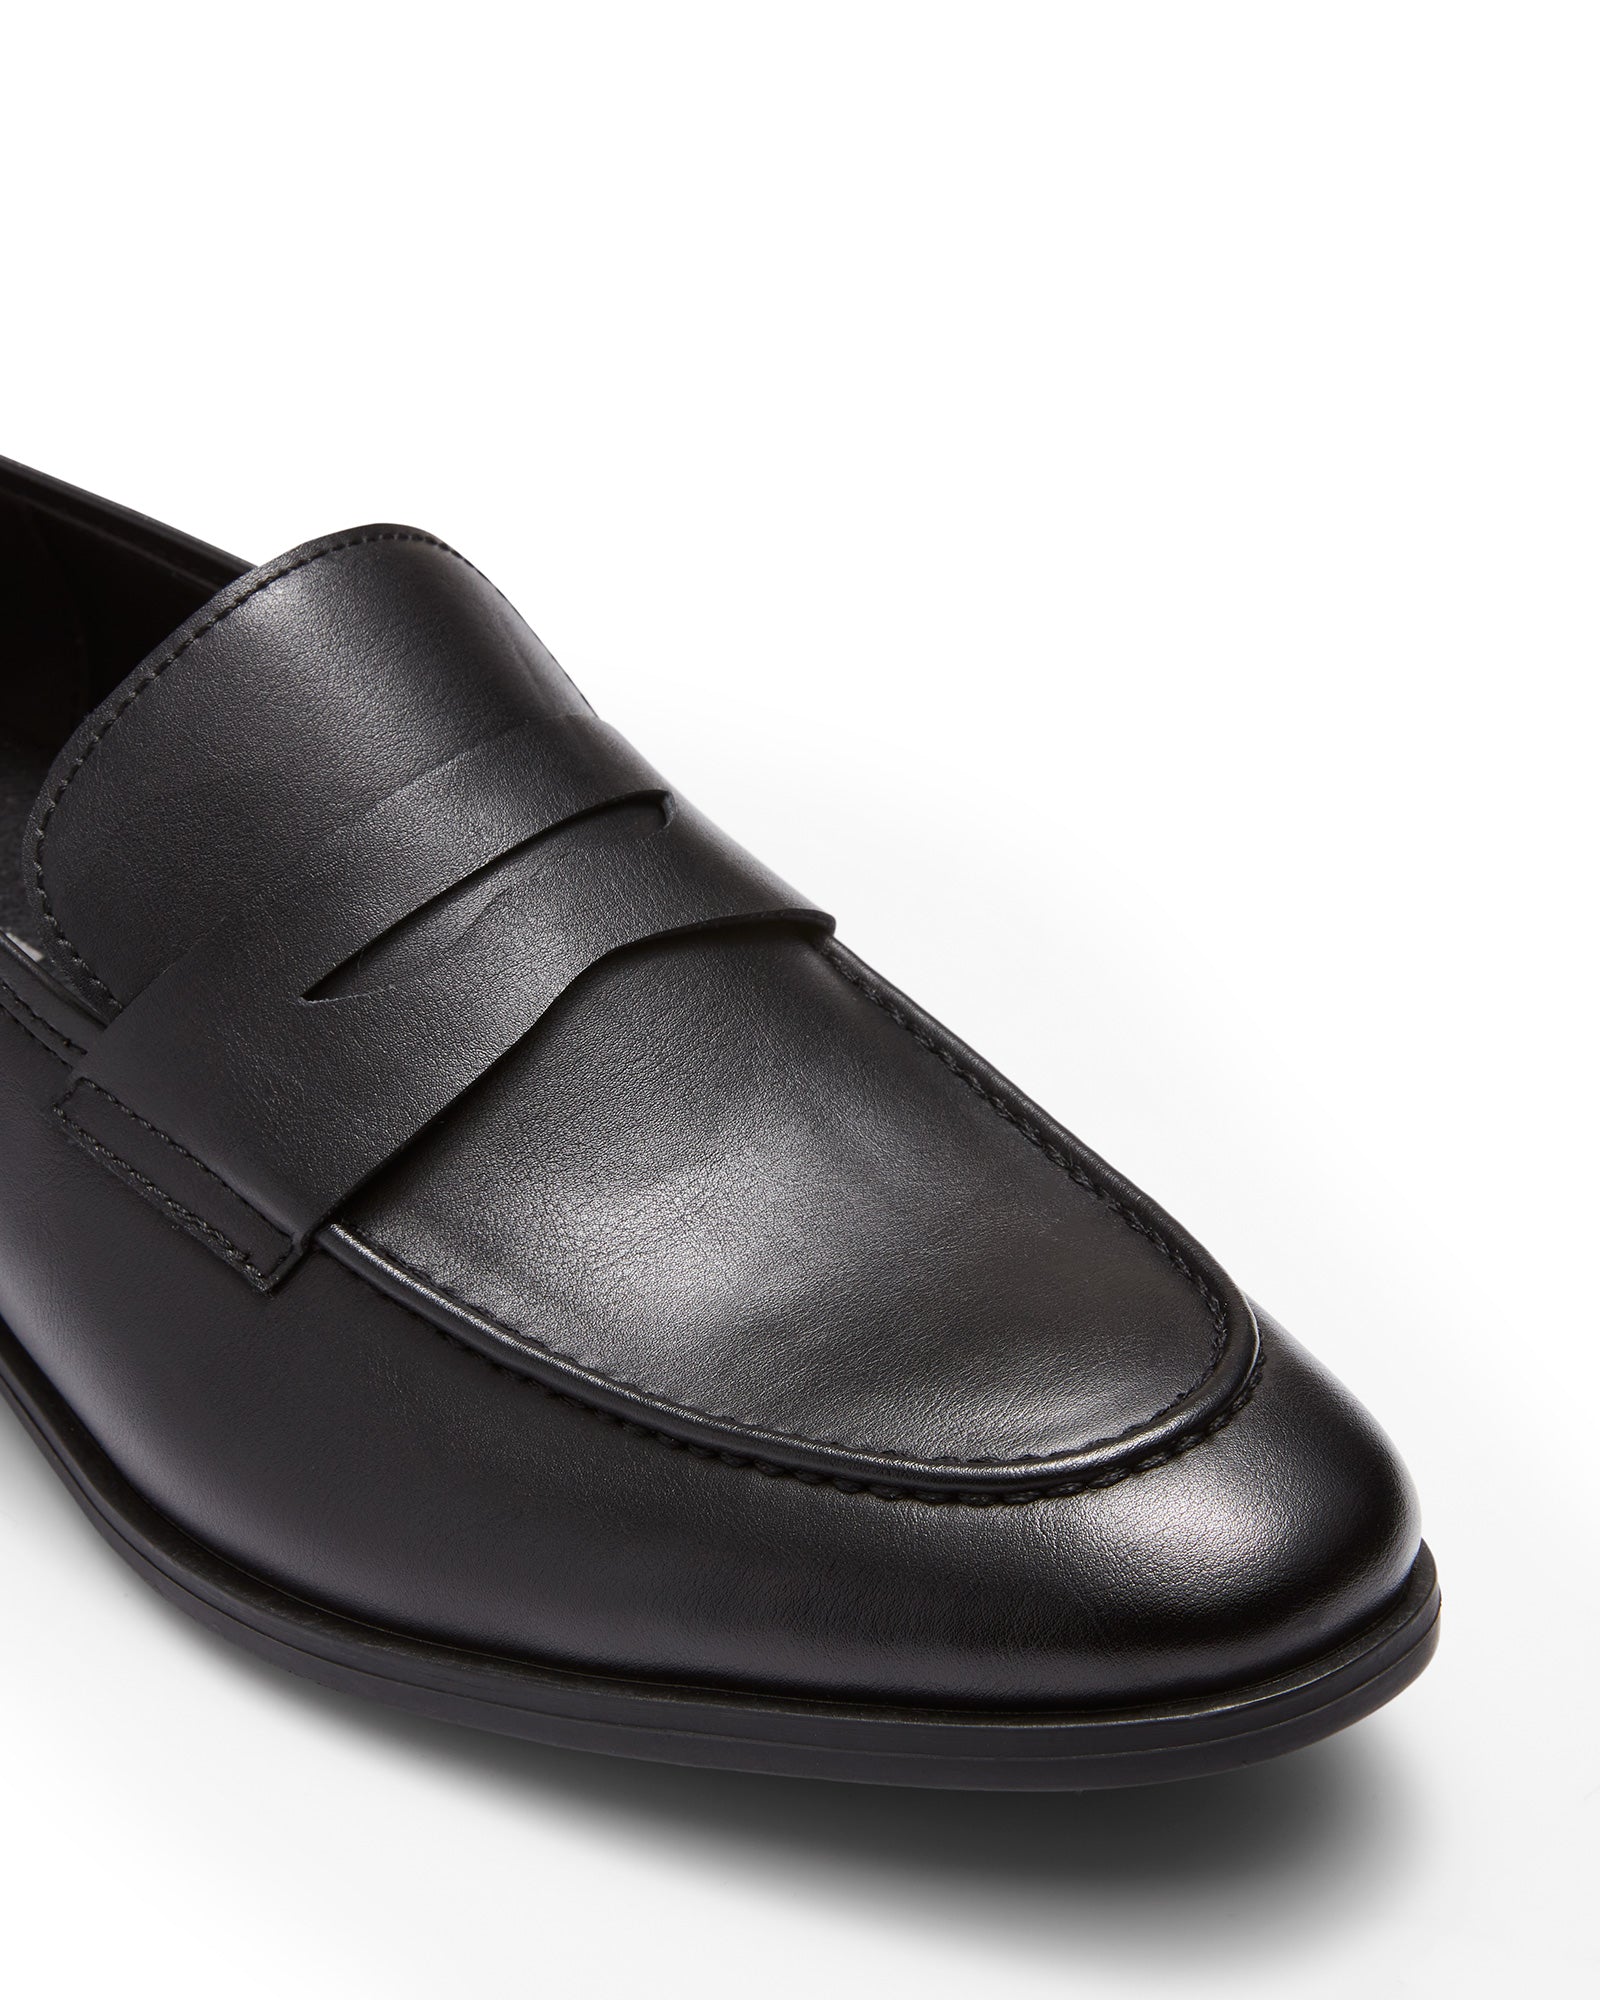 Uncut Shoes Spargo Black | Men's Loafer | Dress Shoe | Slip On | Penny 